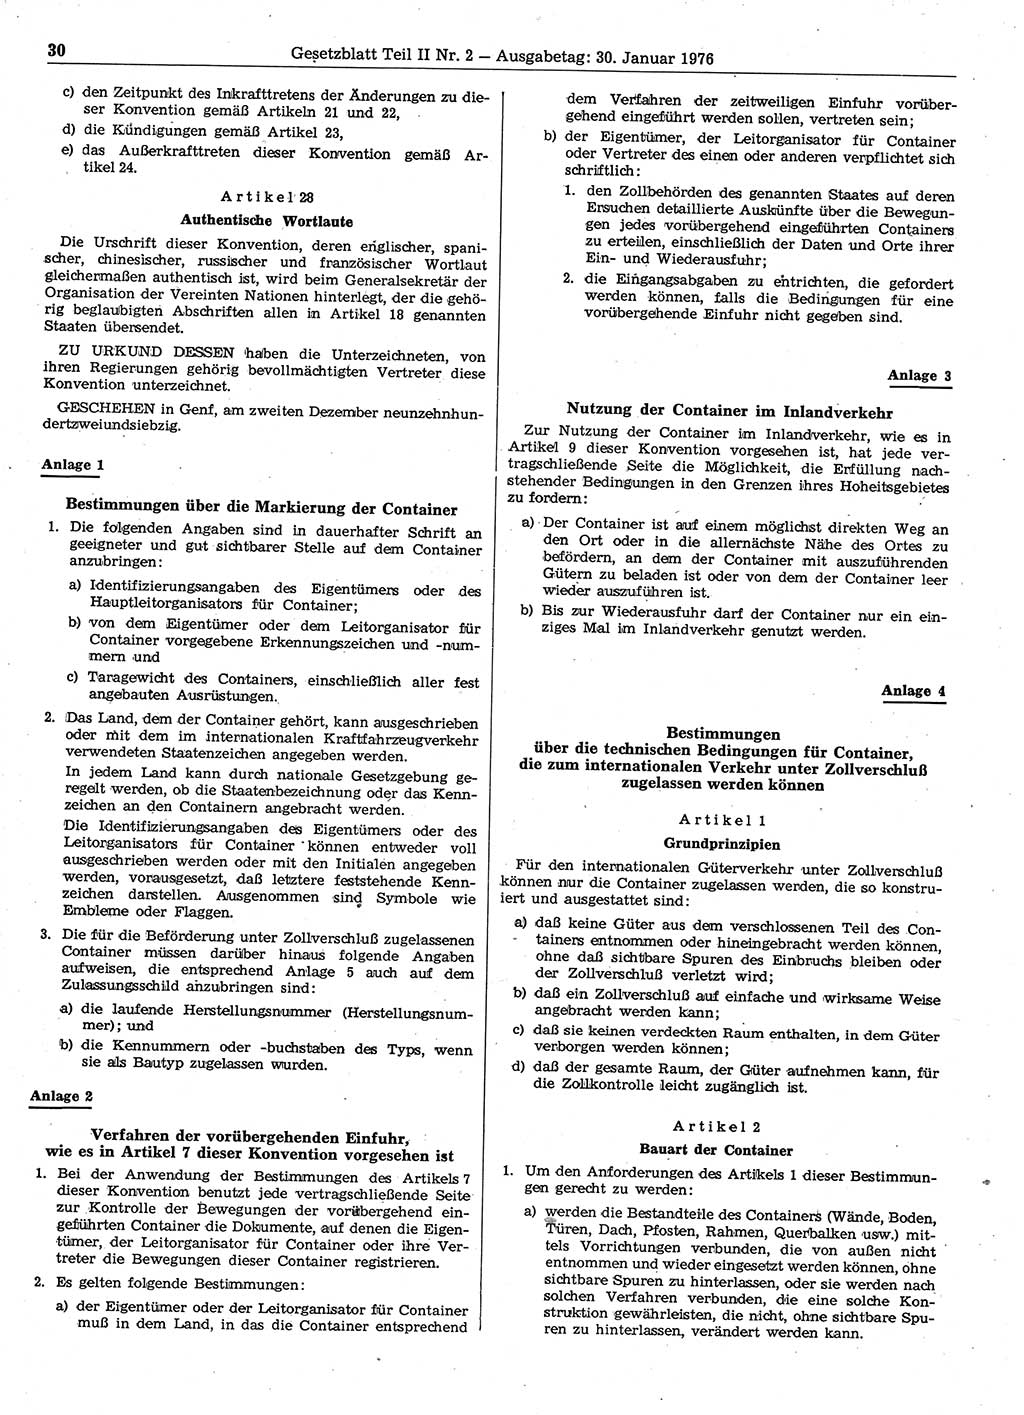 Gesetzblatt (GBl.) der Deutschen Demokratischen Republik (DDR) Teil ⅠⅠ 1976, Seite 30 (GBl. DDR ⅠⅠ 1976, S. 30)